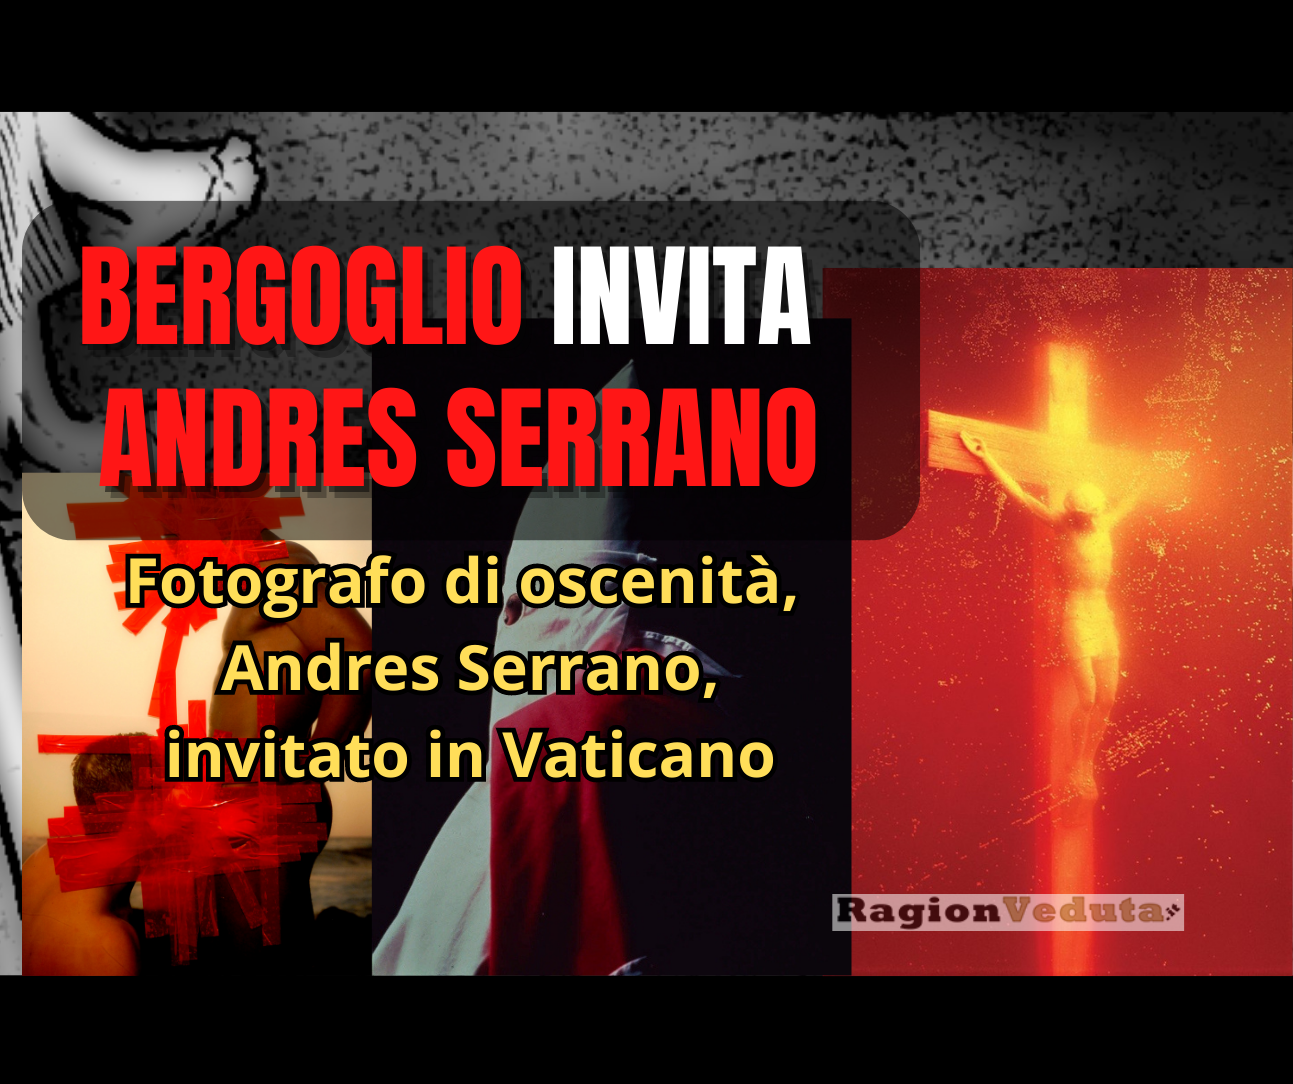 Bergoglio e Serrano in Vaticano